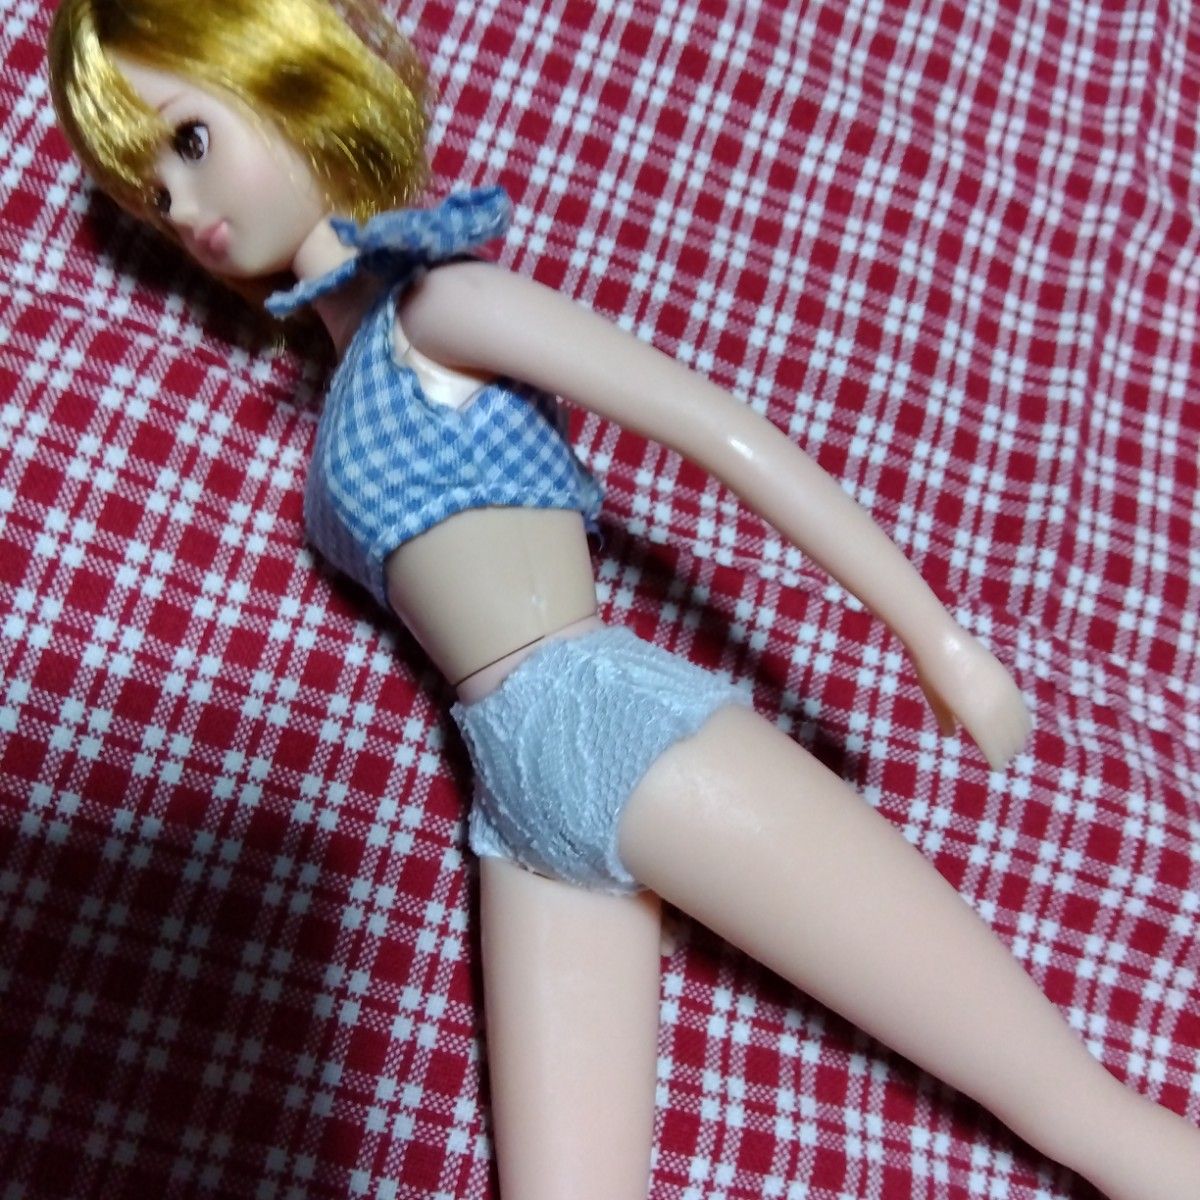 ハンドメイド　ジェニーちゃん　パンツ　10枚セット　灰×レース　リカちゃんキャッスル　ジェニーフレンド　サイズ　人形　手作り